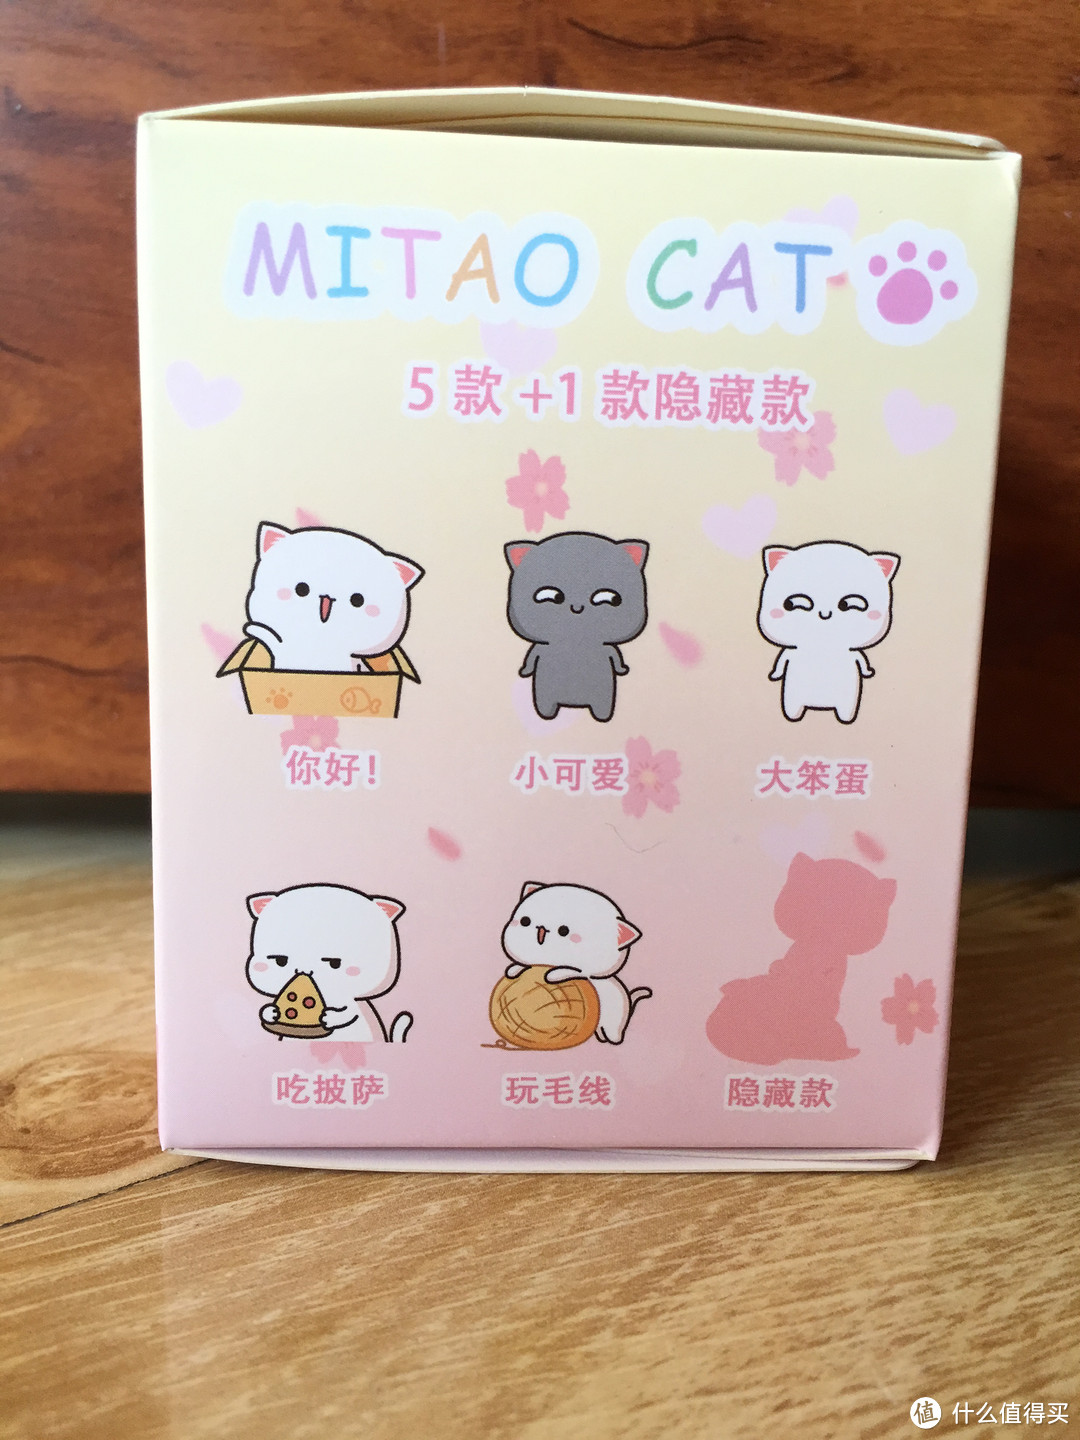 号称全网最萌表情包——MI TAO CAT 蜜桃猫盲盒第一弹使用测评